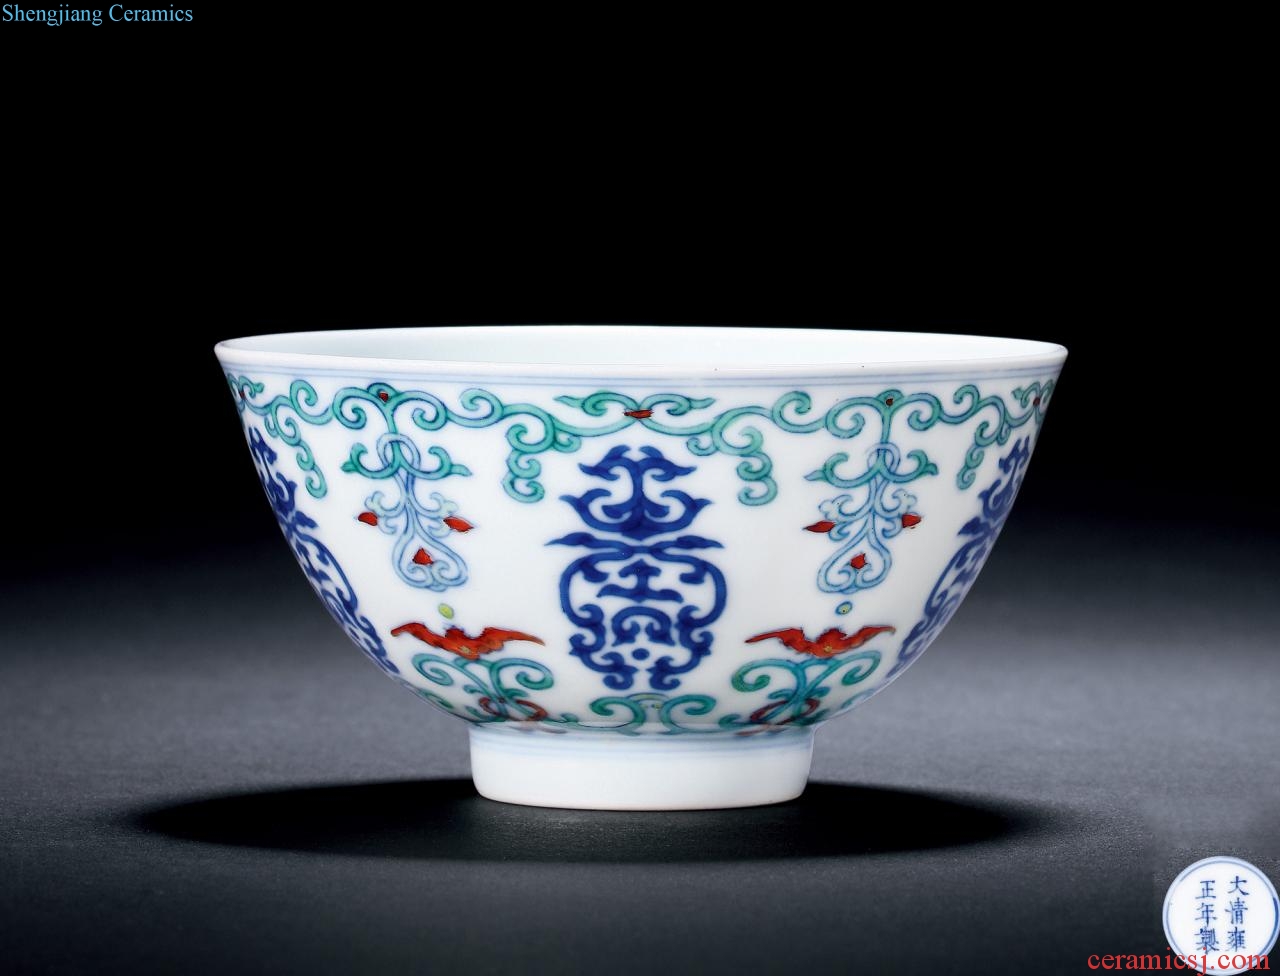 Qing yongzheng bucket live flowers green-splashed bowls